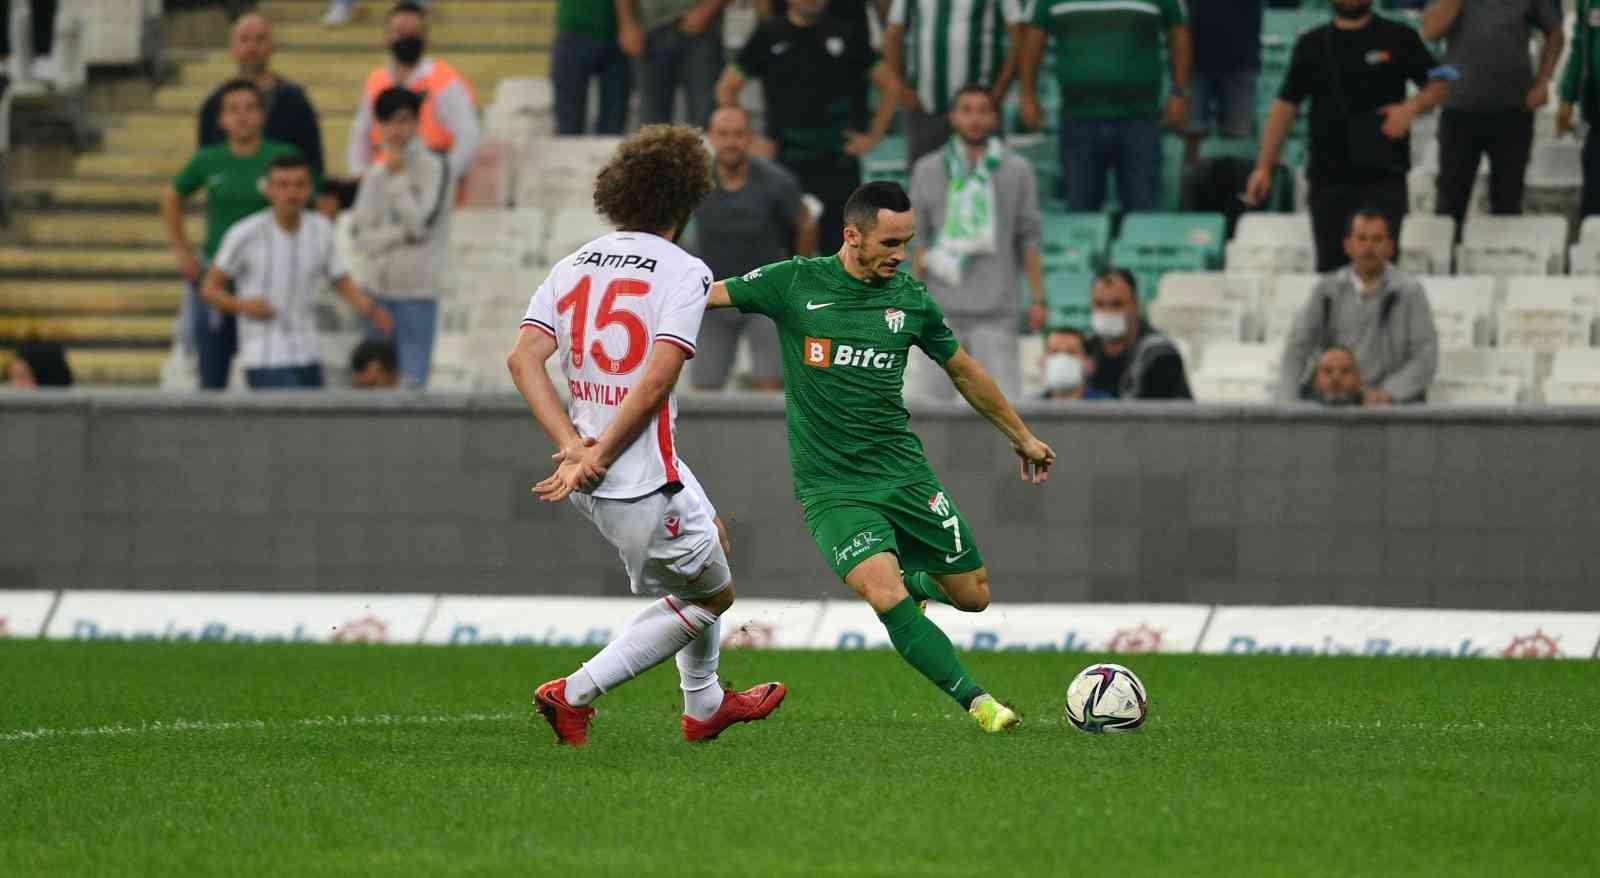 Bursaspor deplasmanda Samsunspor’la karşılaşacak